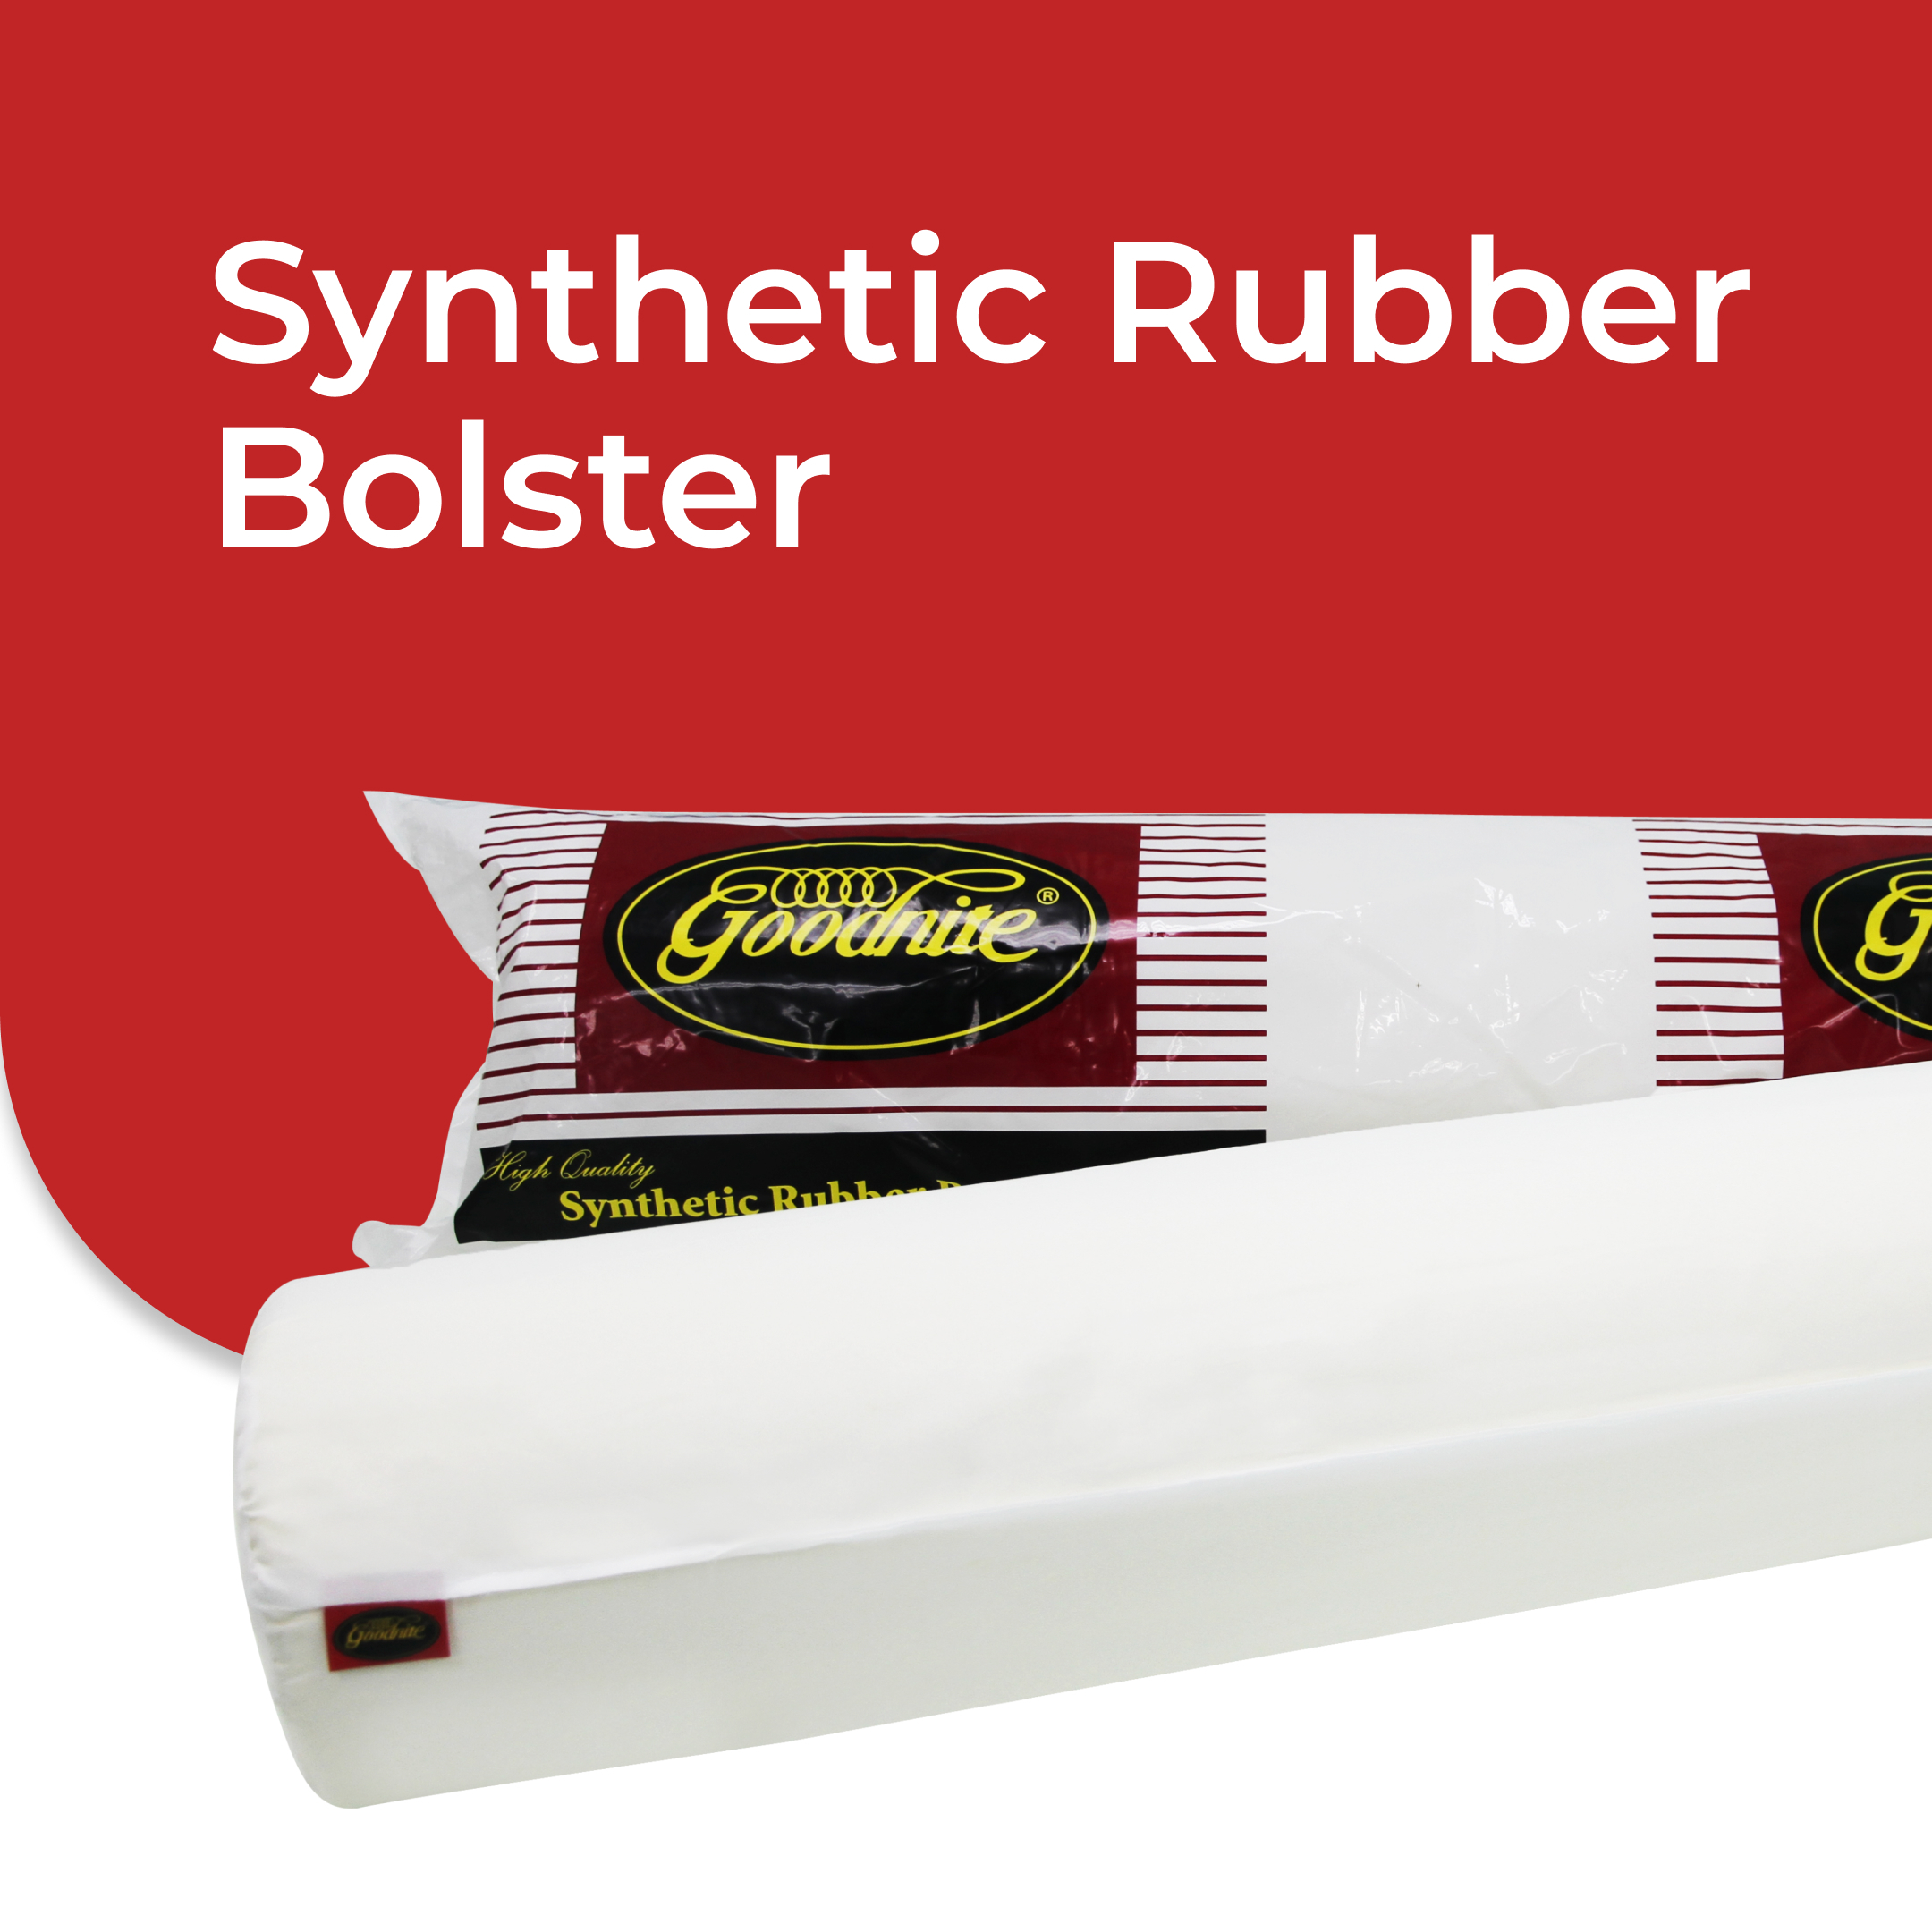 Synthetic Rubber Bolster.jpg